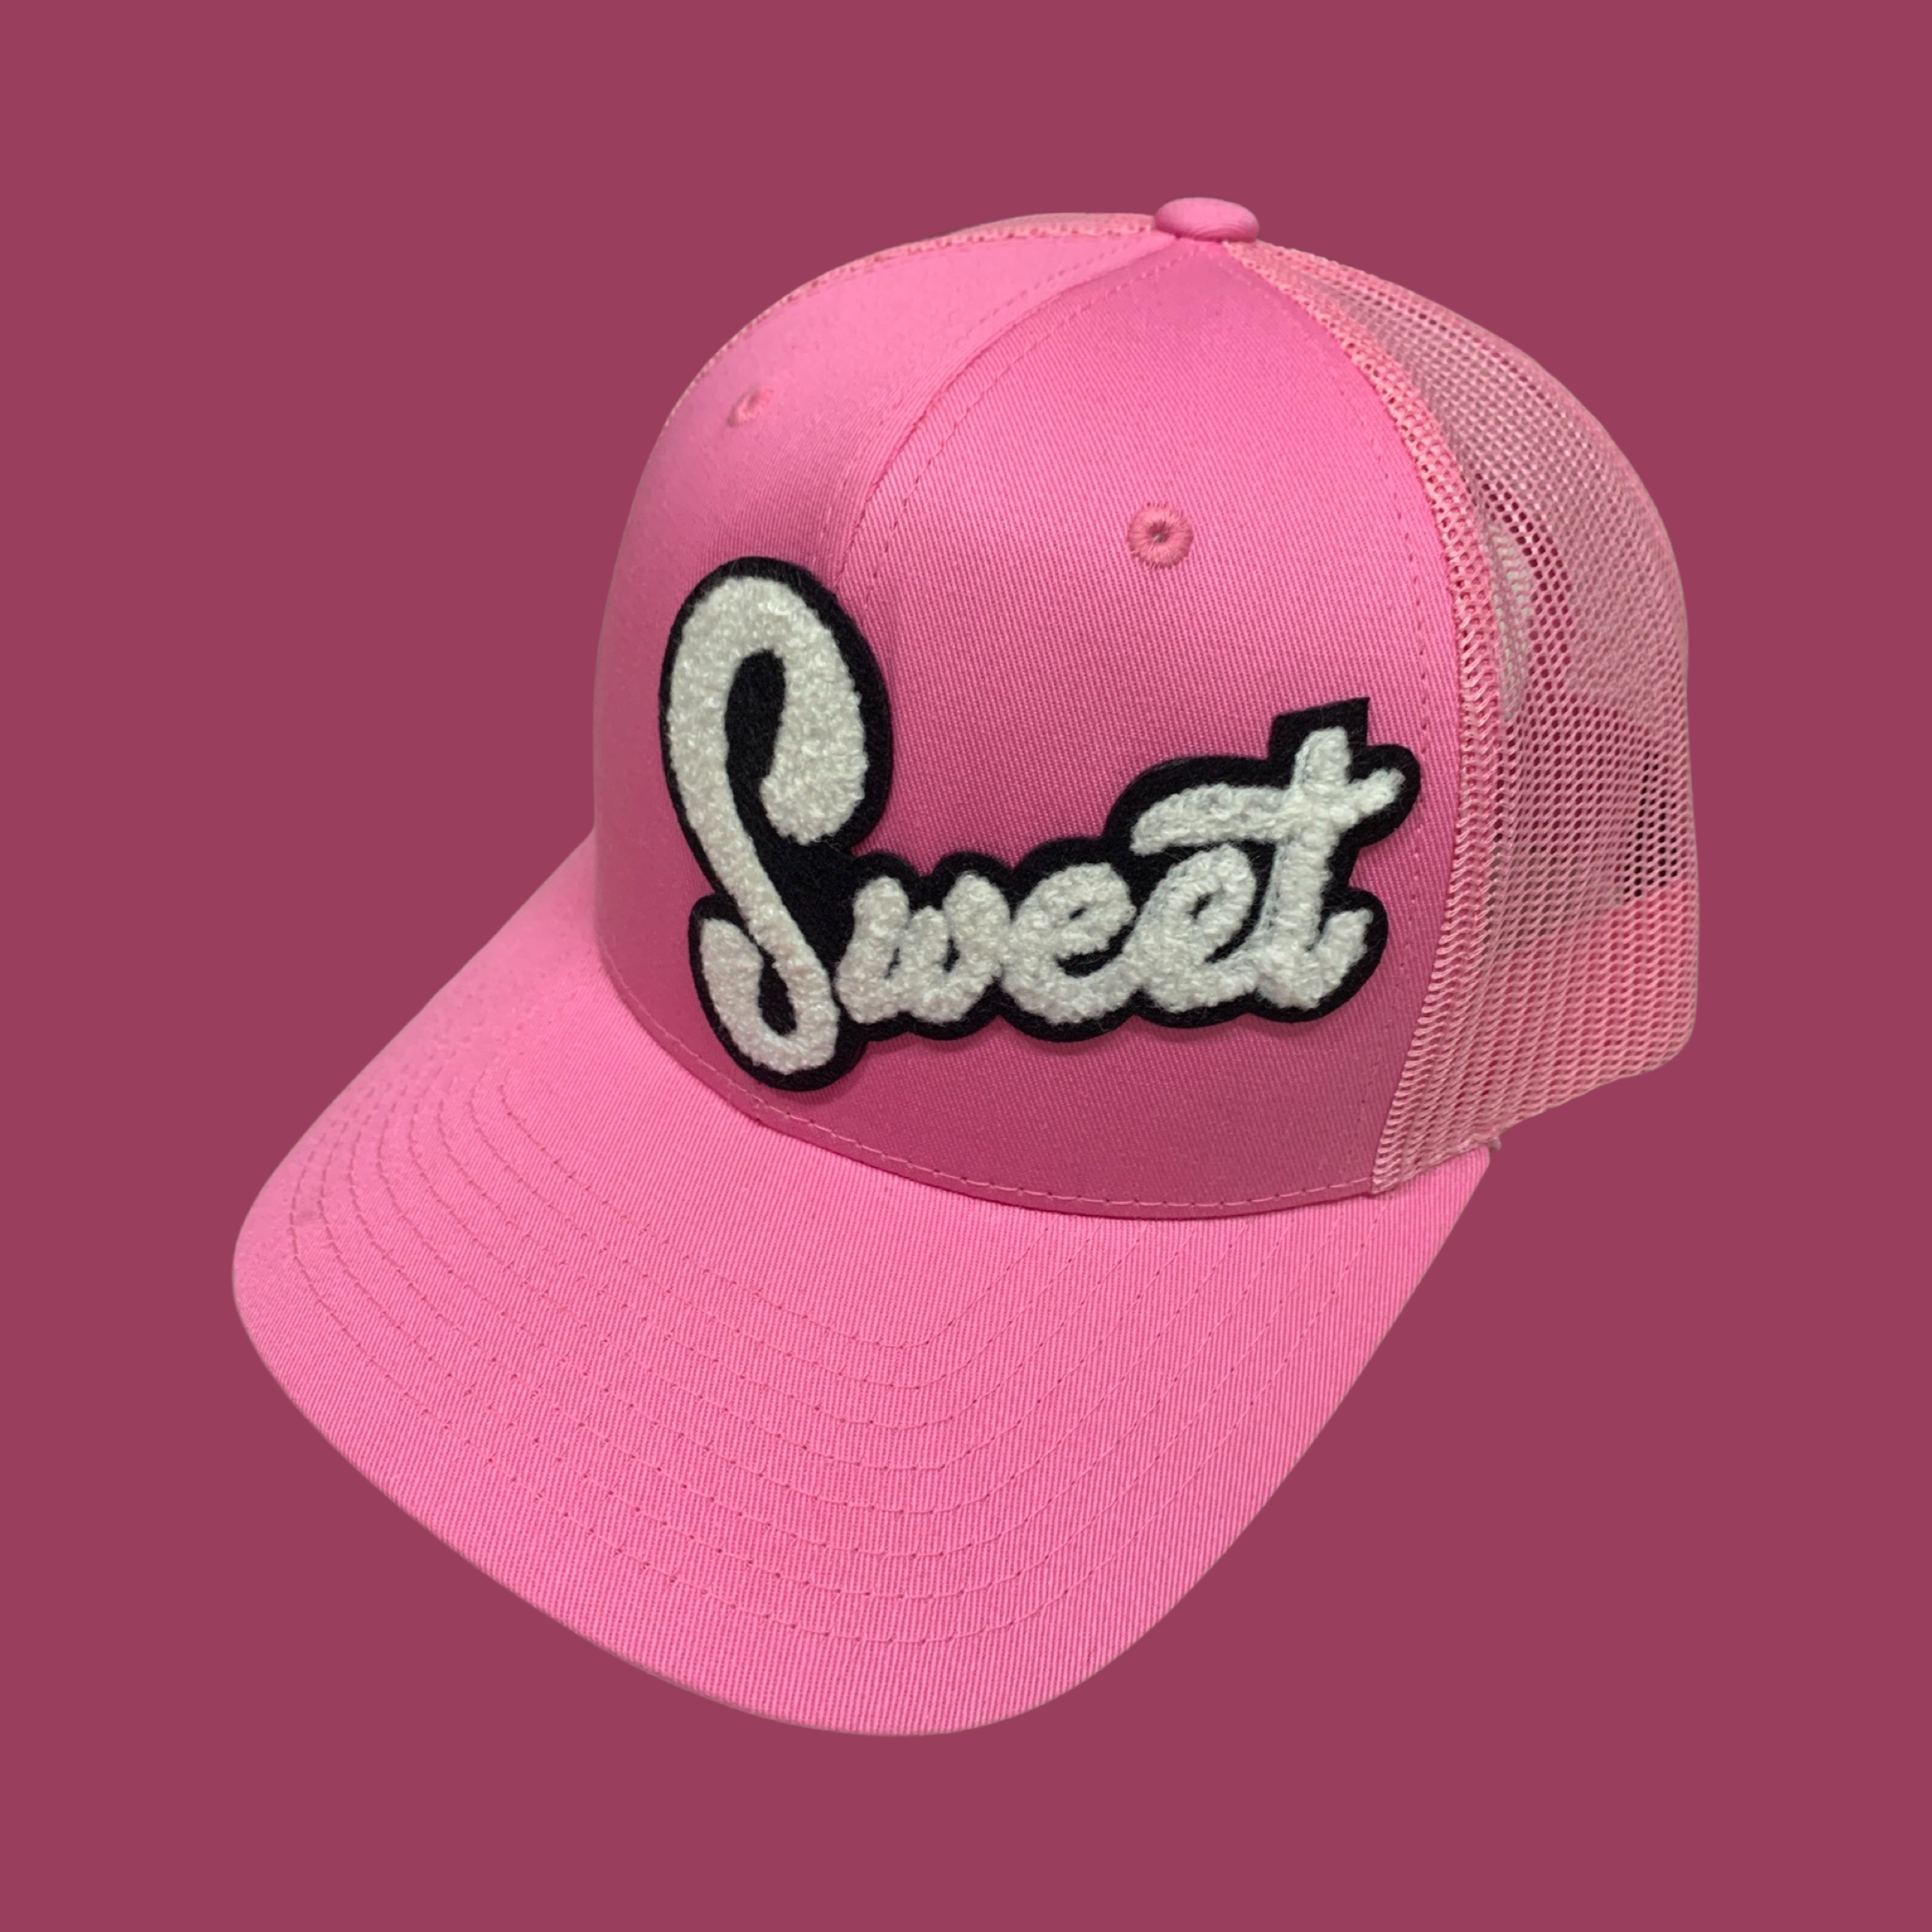 Pink - “Sweet”